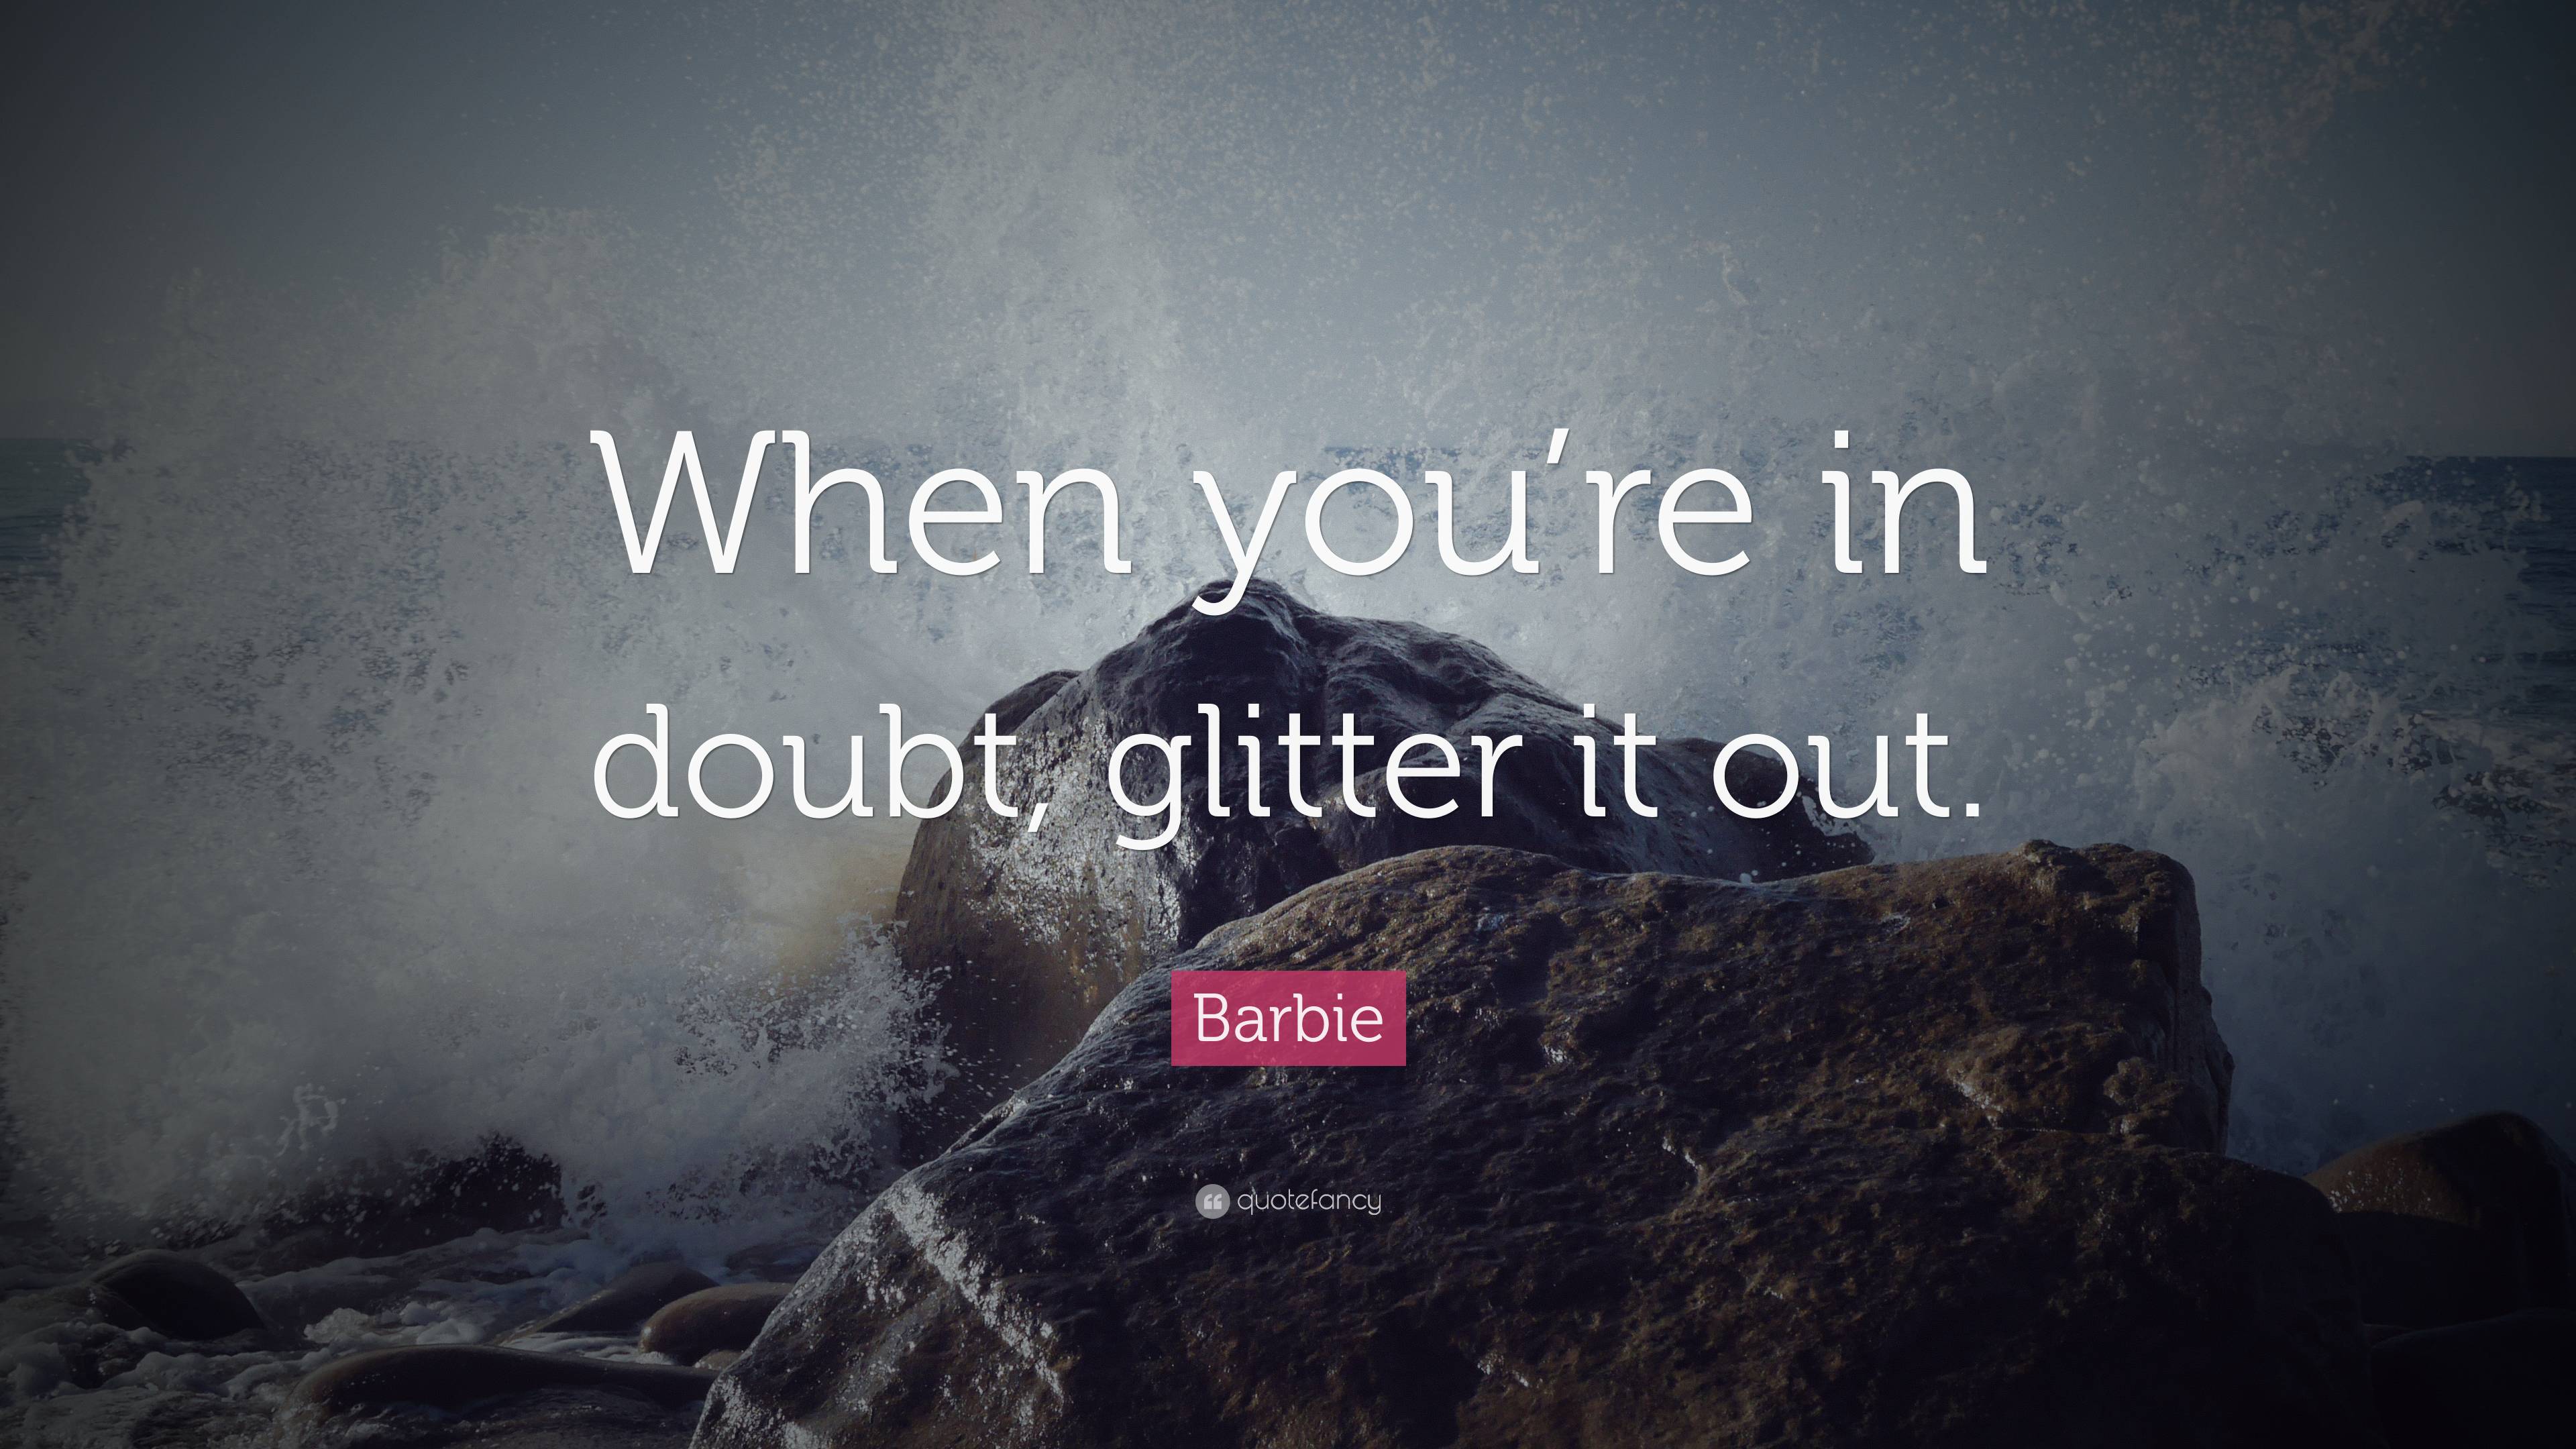 Glitter-It!